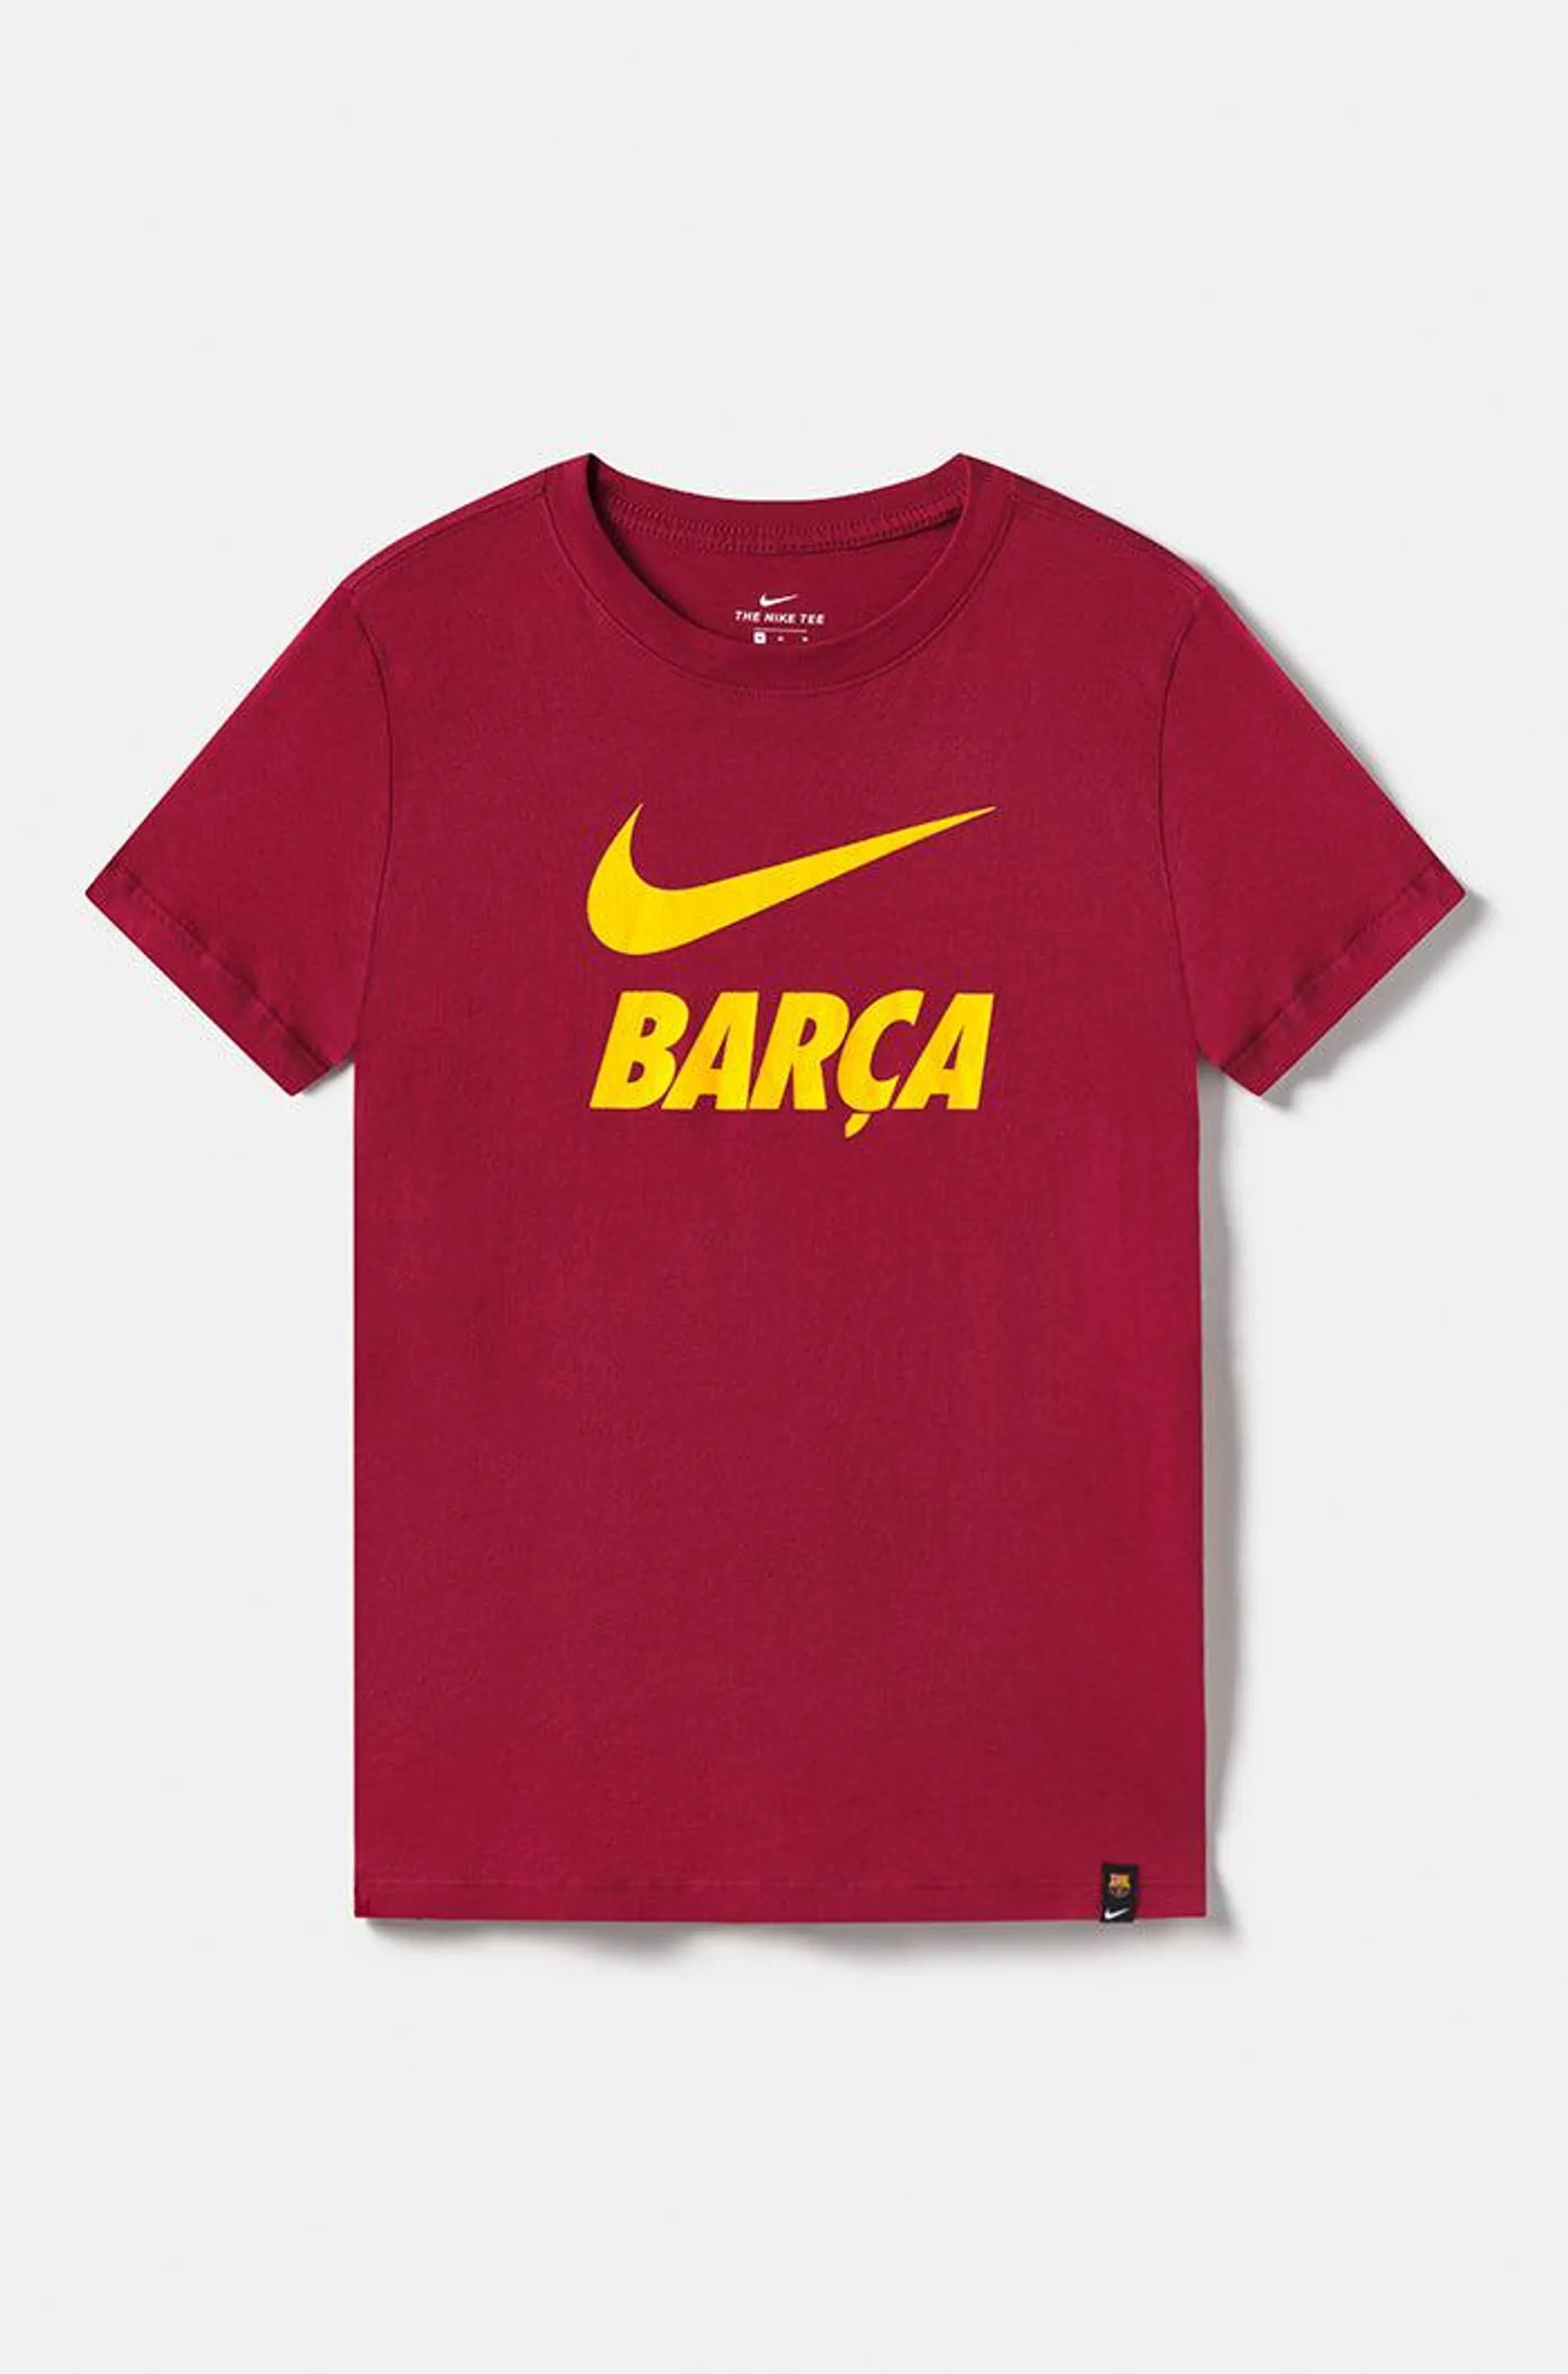 Camiseta “Barça” - Granate